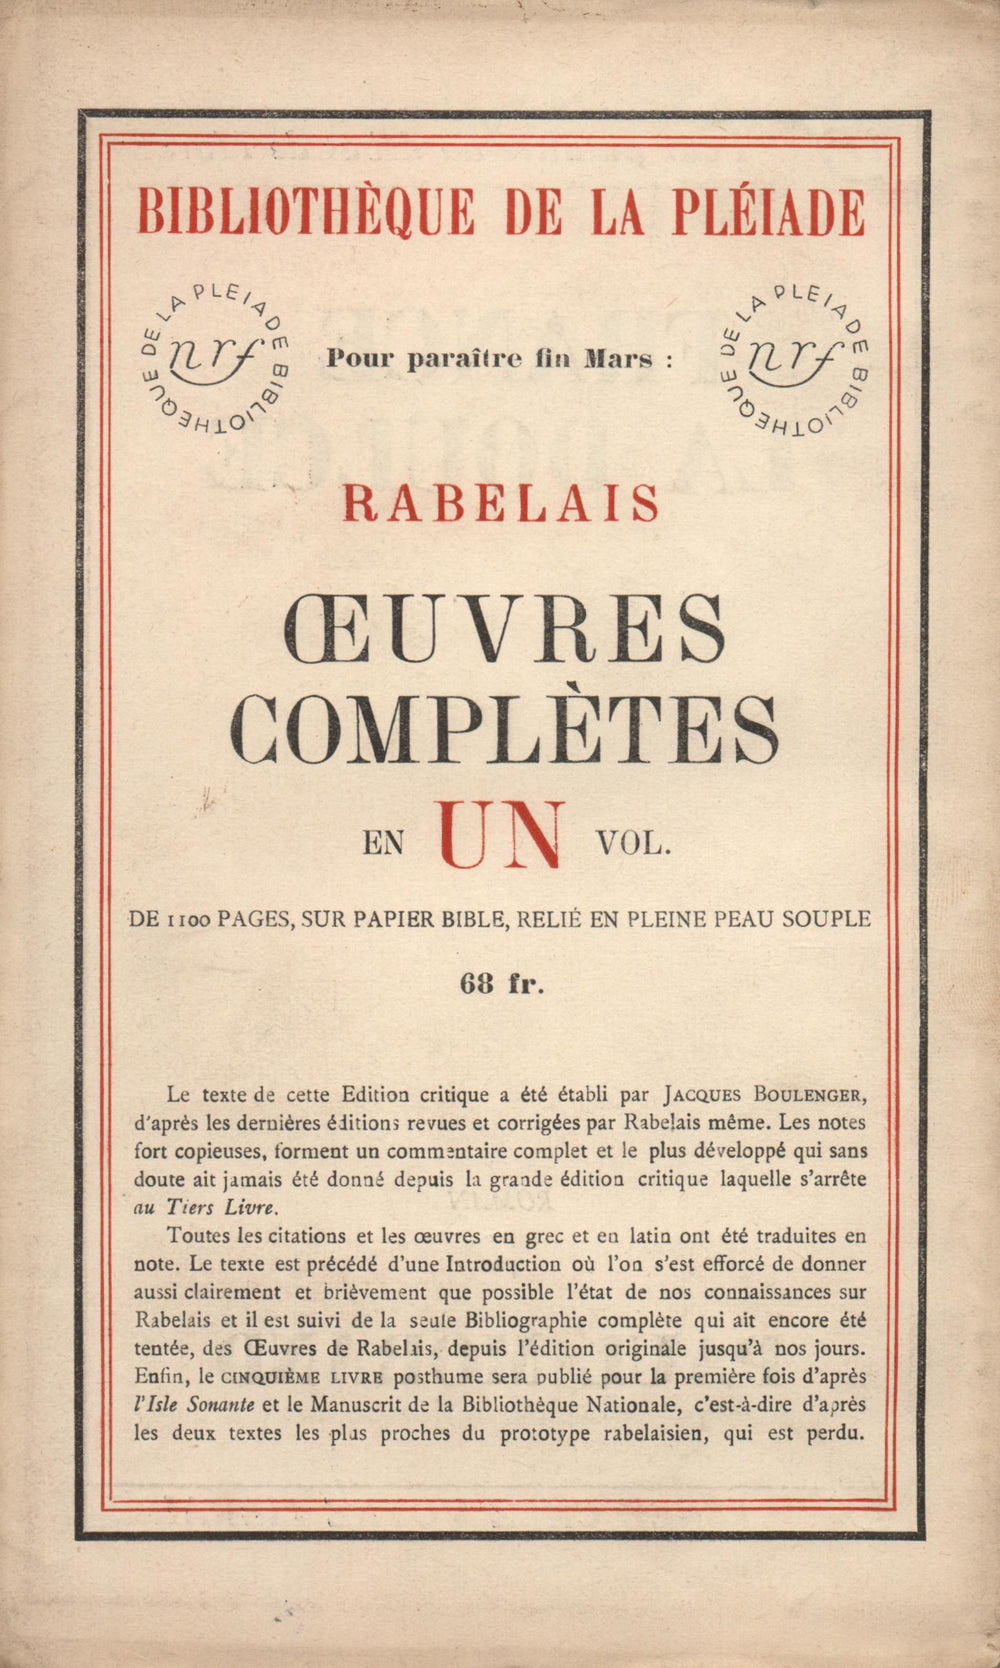 La Nouvelle Revue Française N° 246 (Mars 1934)